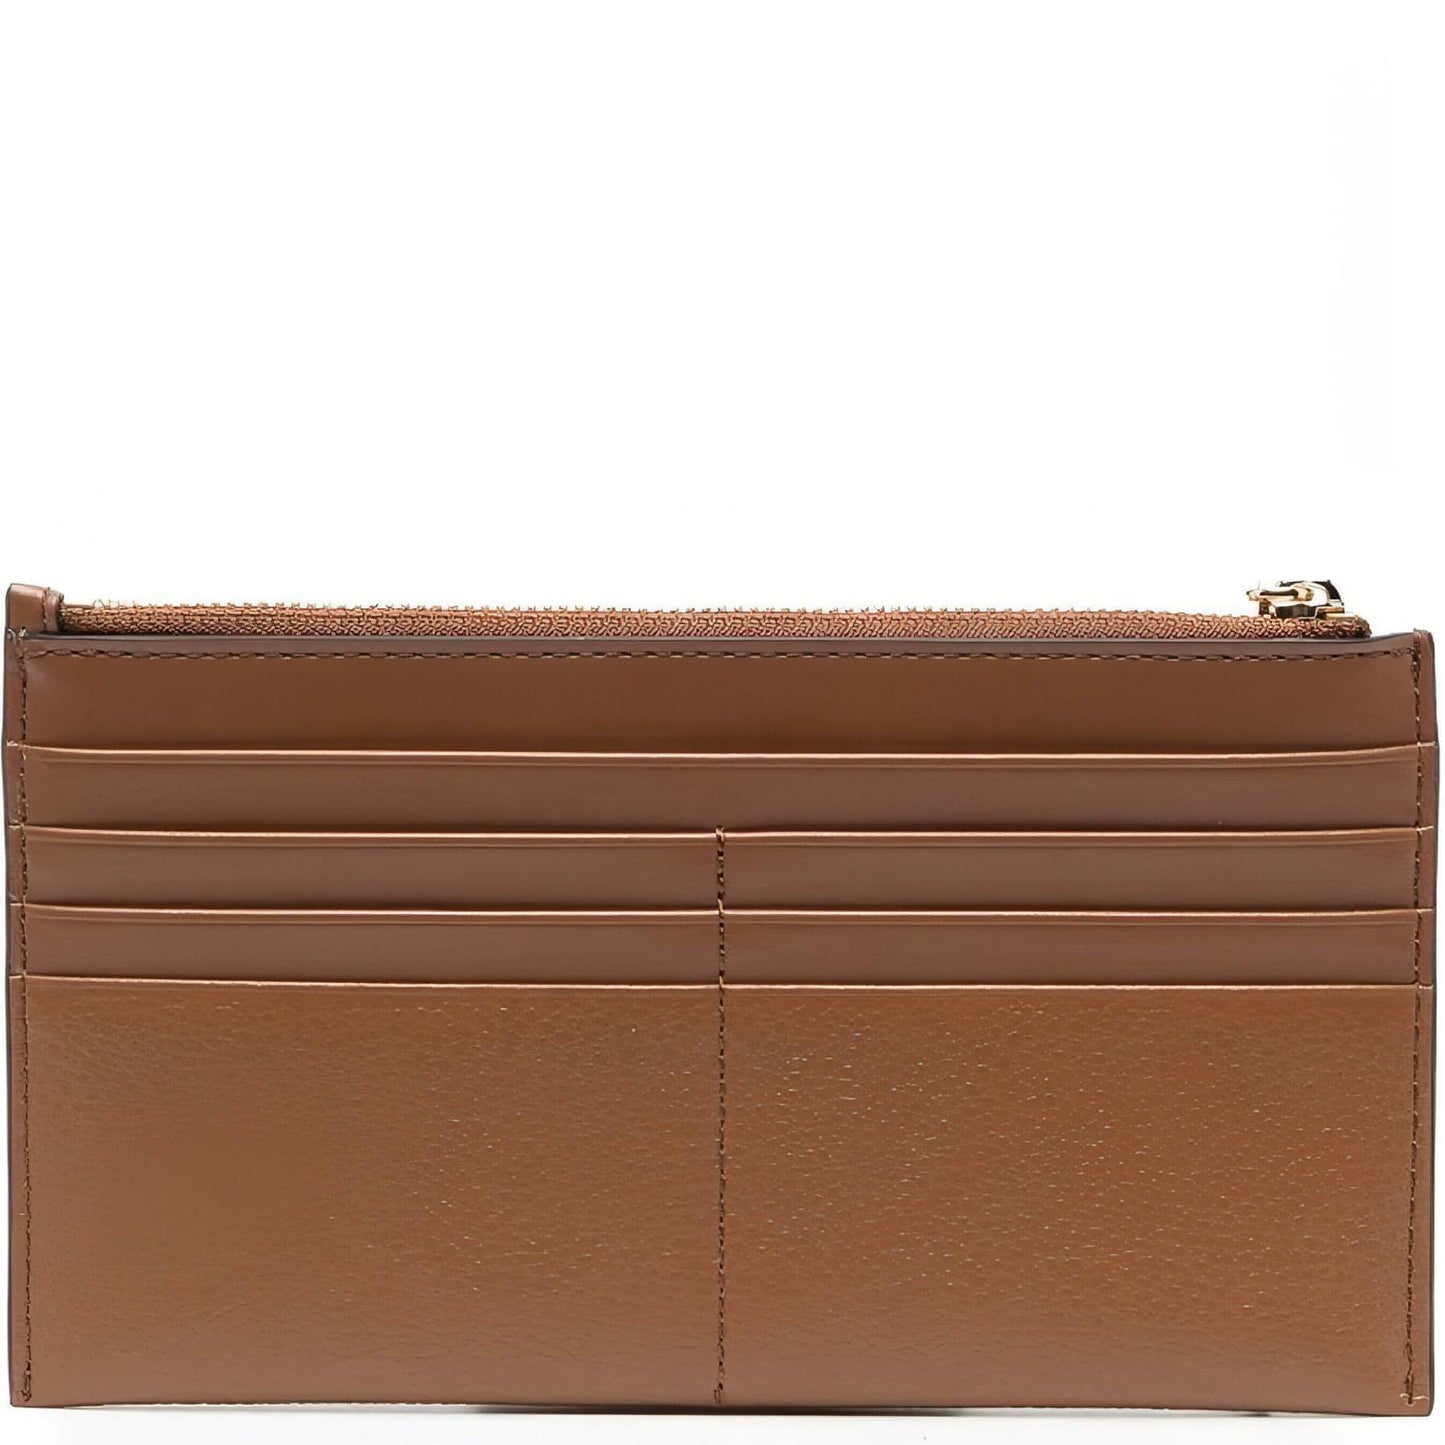 MICHAEL KORS moteriška ruda piniginė LG zip card case